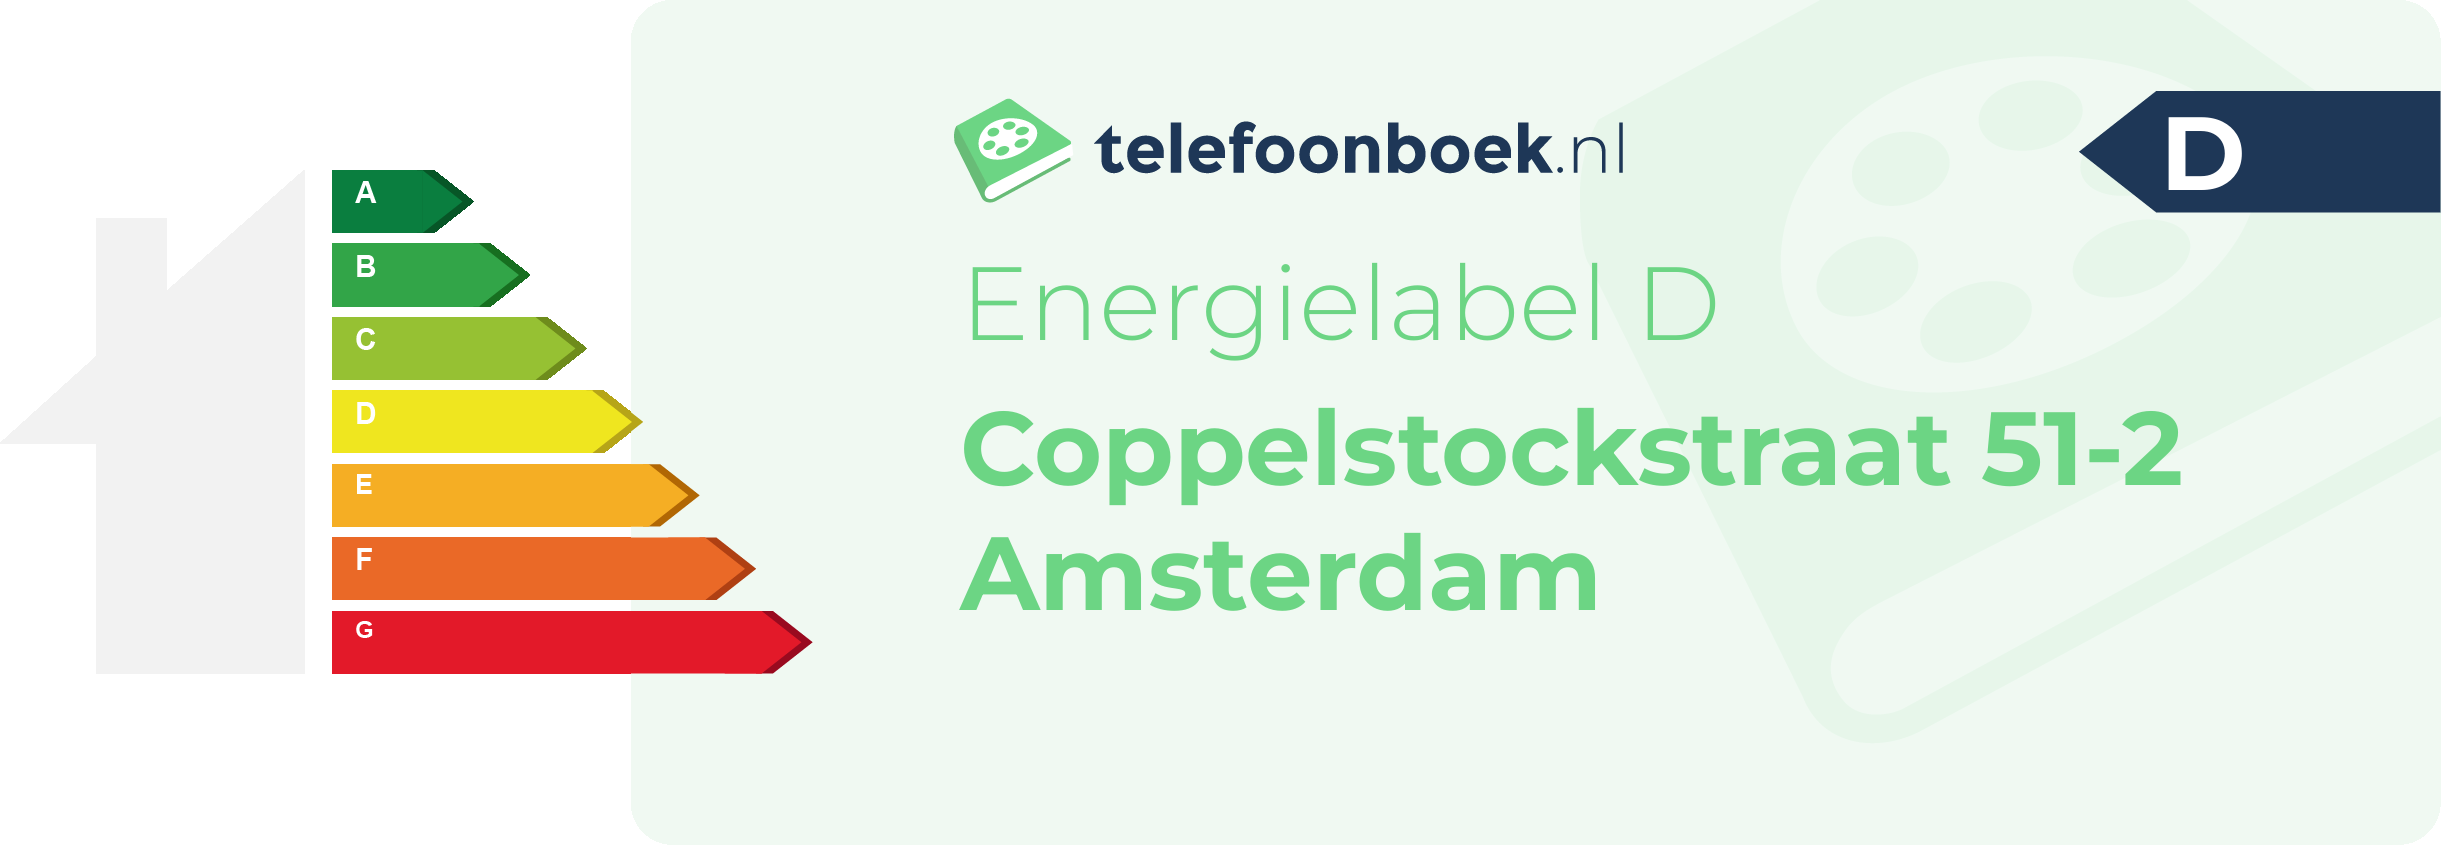 Energielabel Coppelstockstraat 51-2 Amsterdam